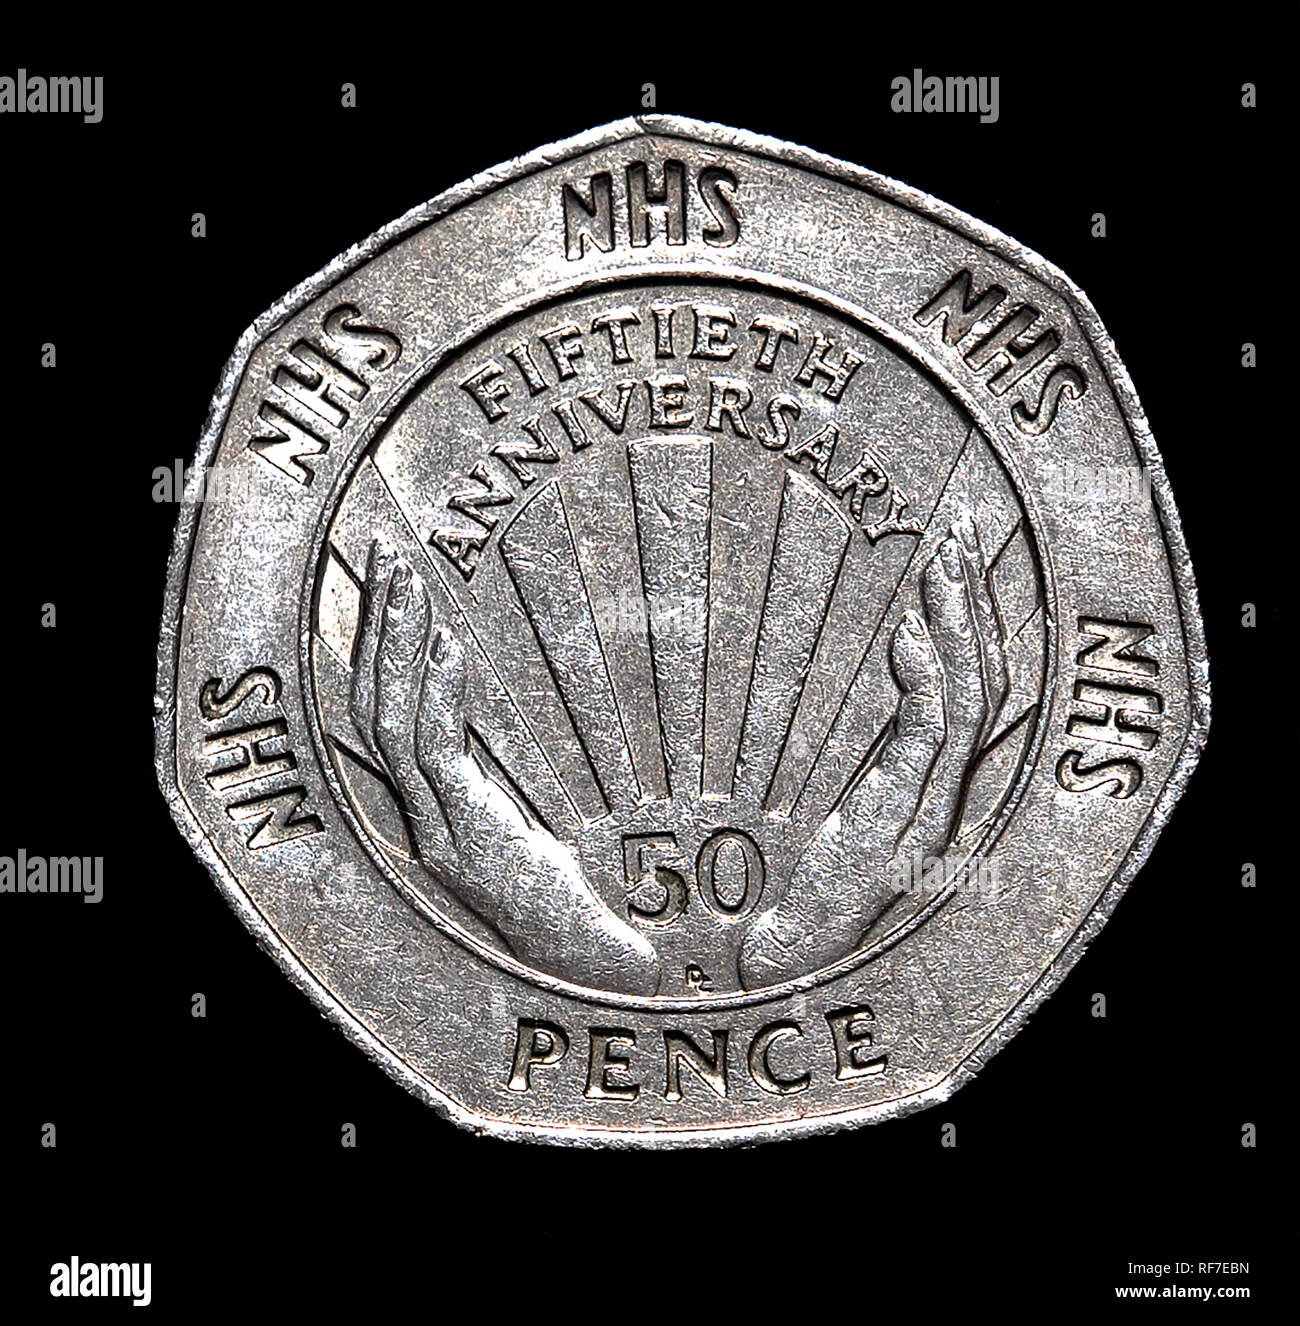 Reino Unido 50 peniques moneda conmemorativa celebrando el Servicio Nacional de Salud. Foto de stock